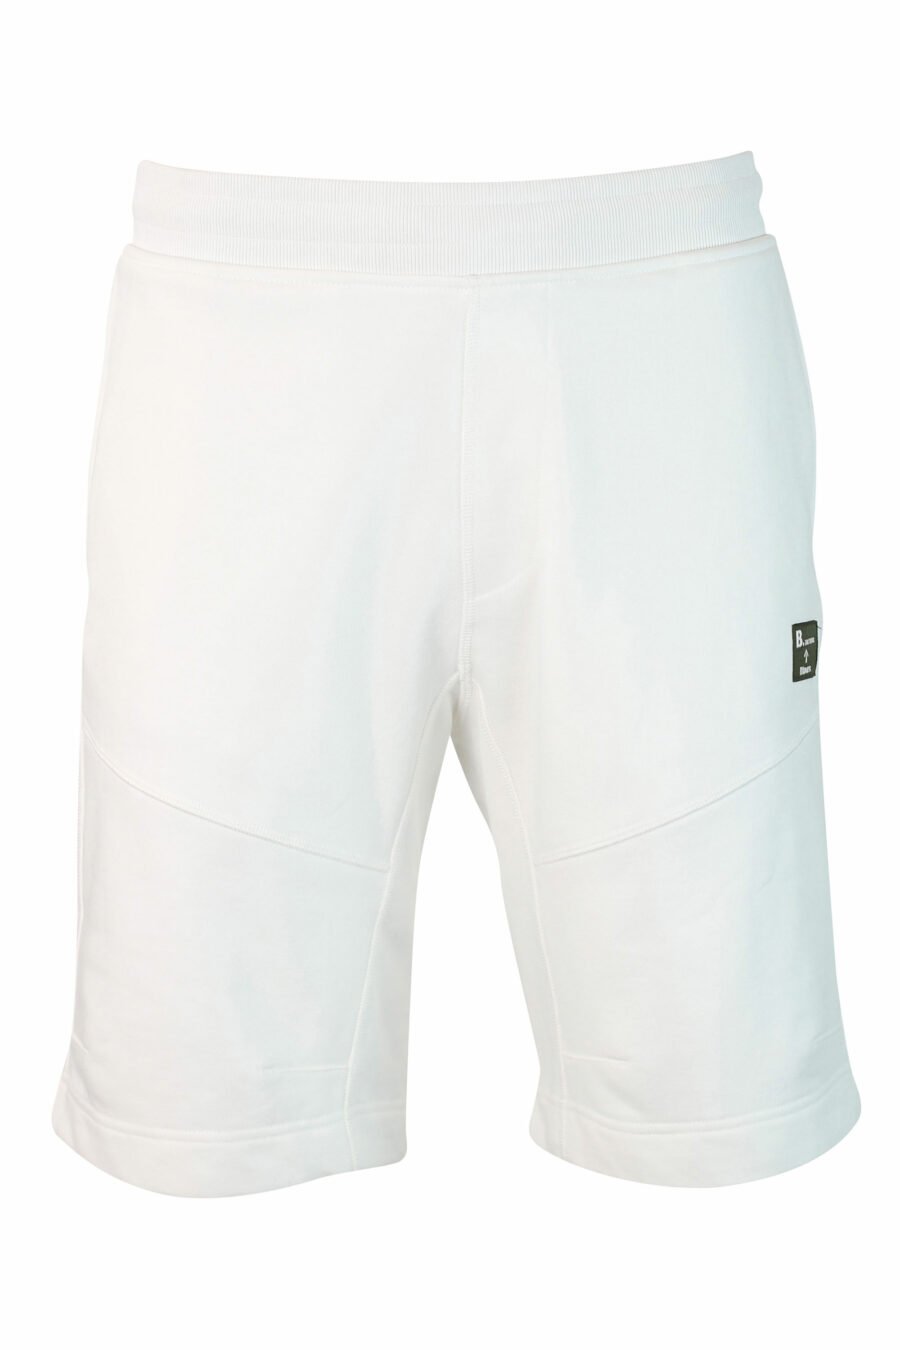 Pantalón de chándal corto blanco - IMG 9860